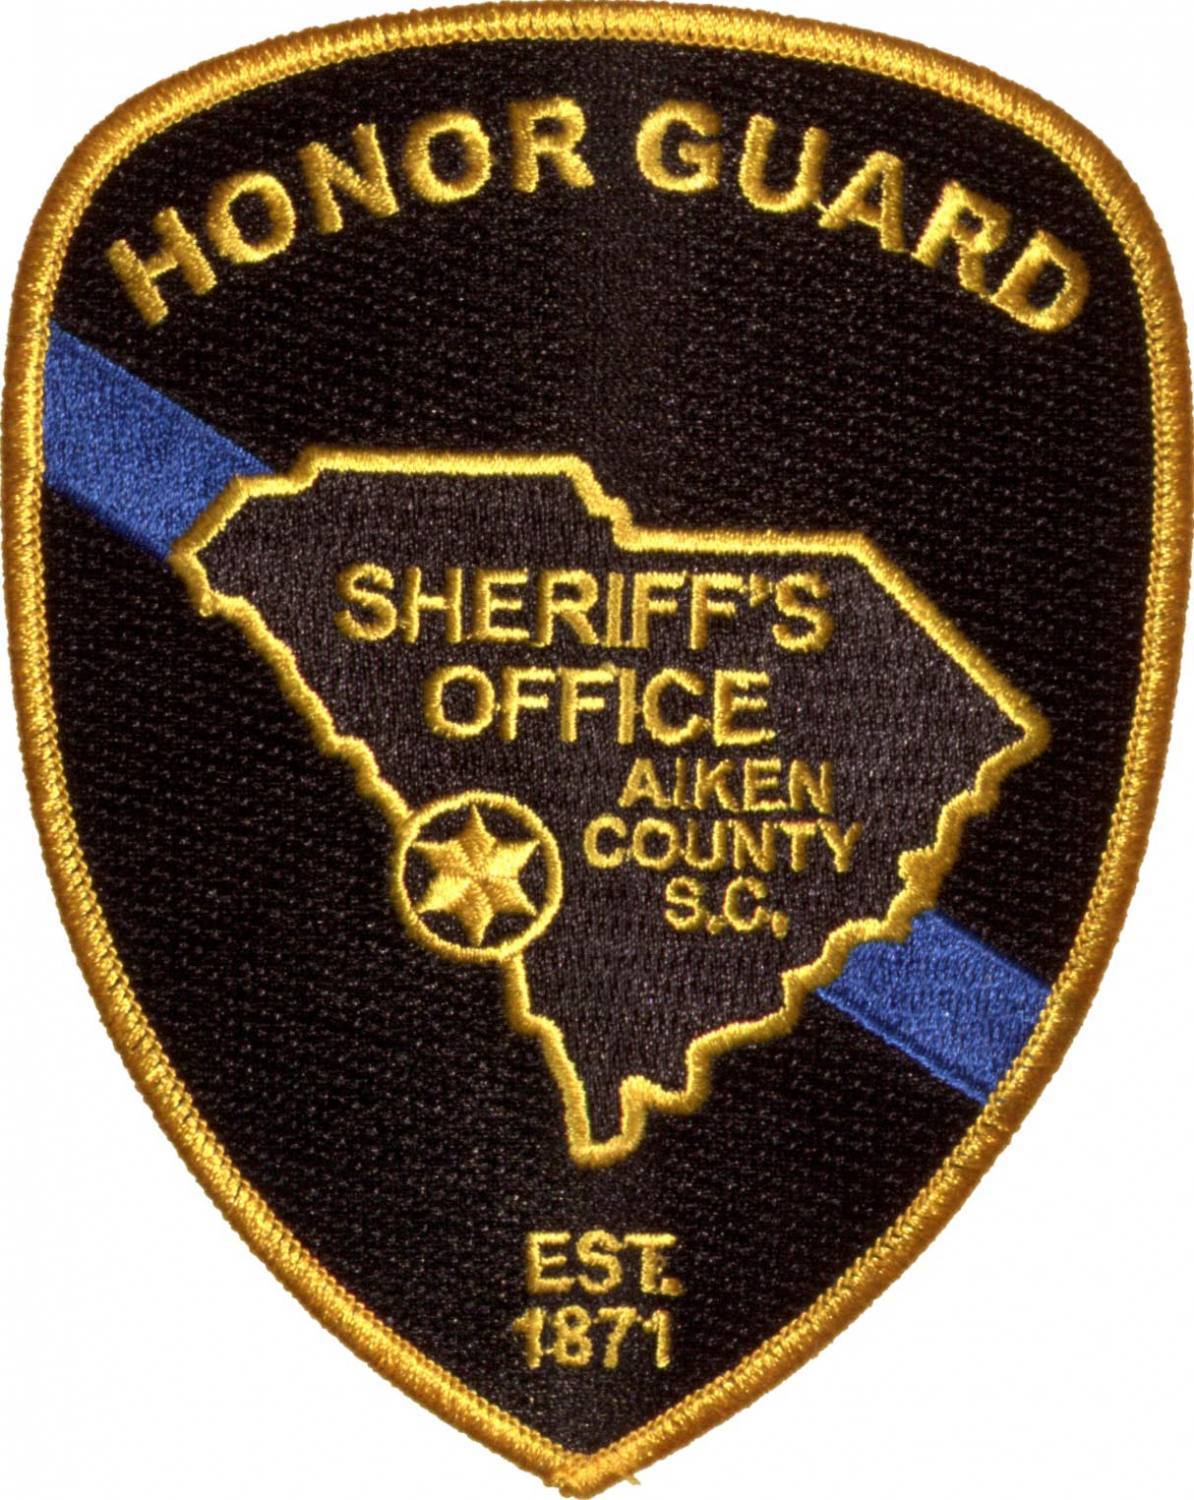 Honor Guard emblems